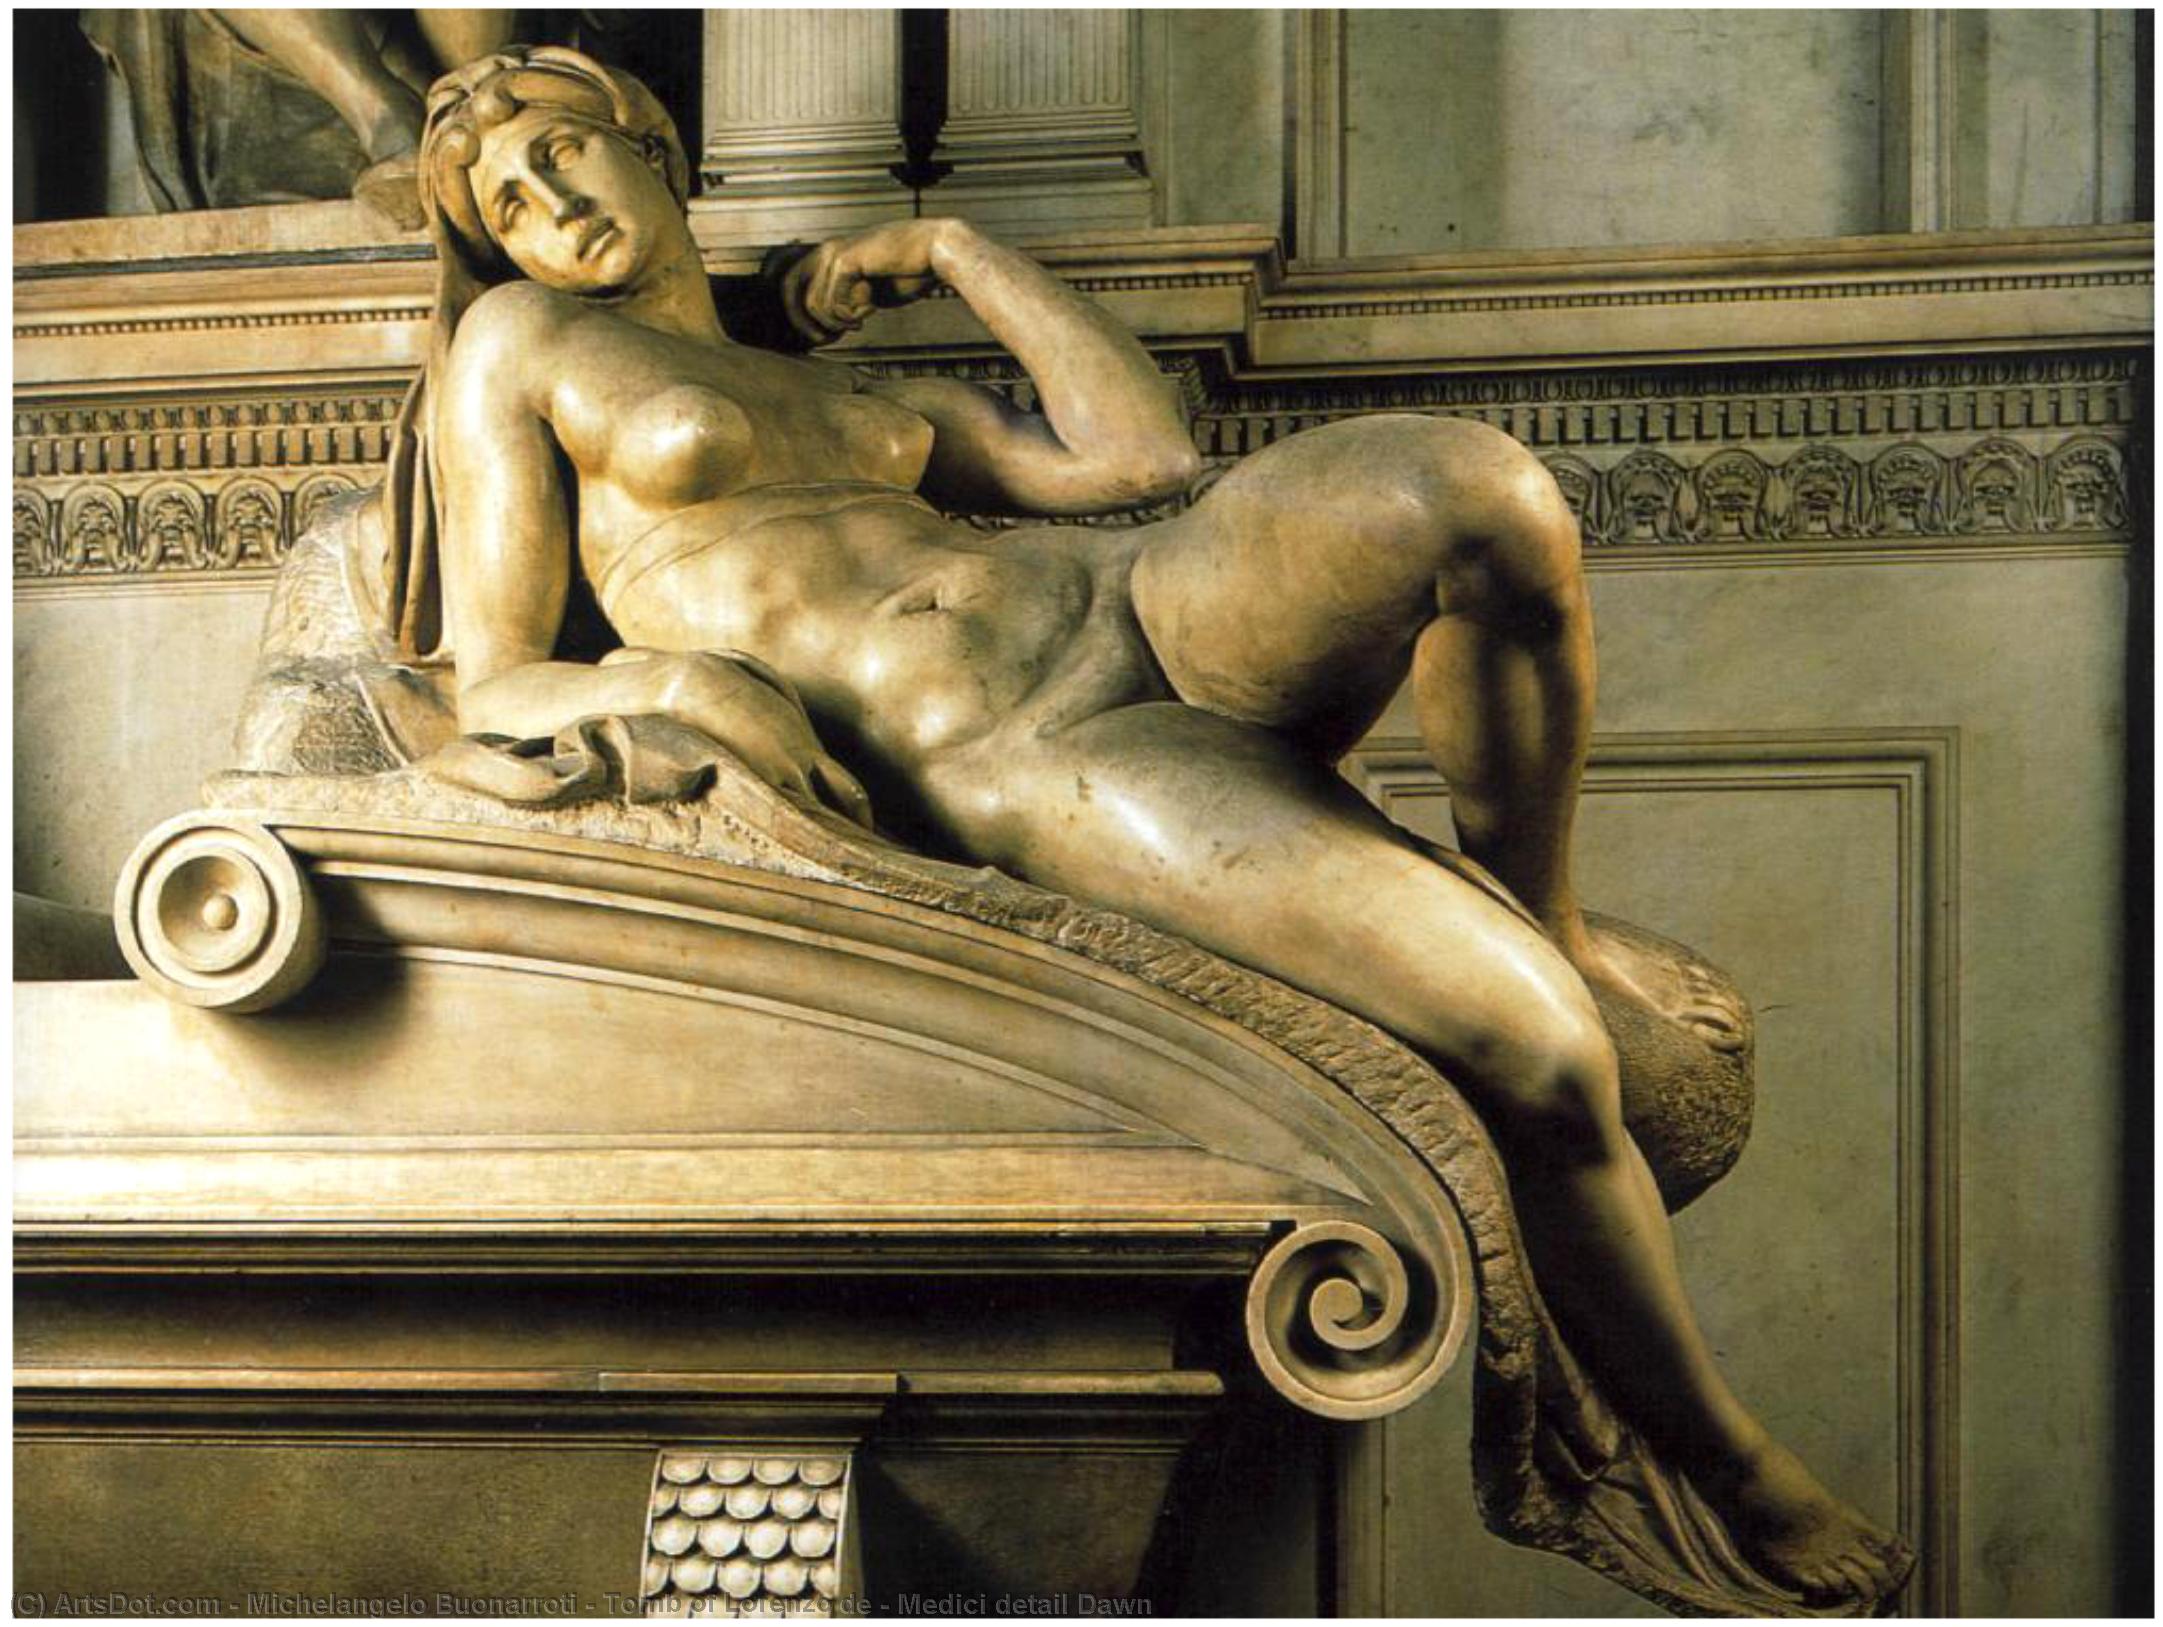 WikiOO.org - Enciclopédia das Belas Artes - Pintura, Arte por Michelangelo Buonarroti - Tomb of Lorenzo de - Medici detail Dawn